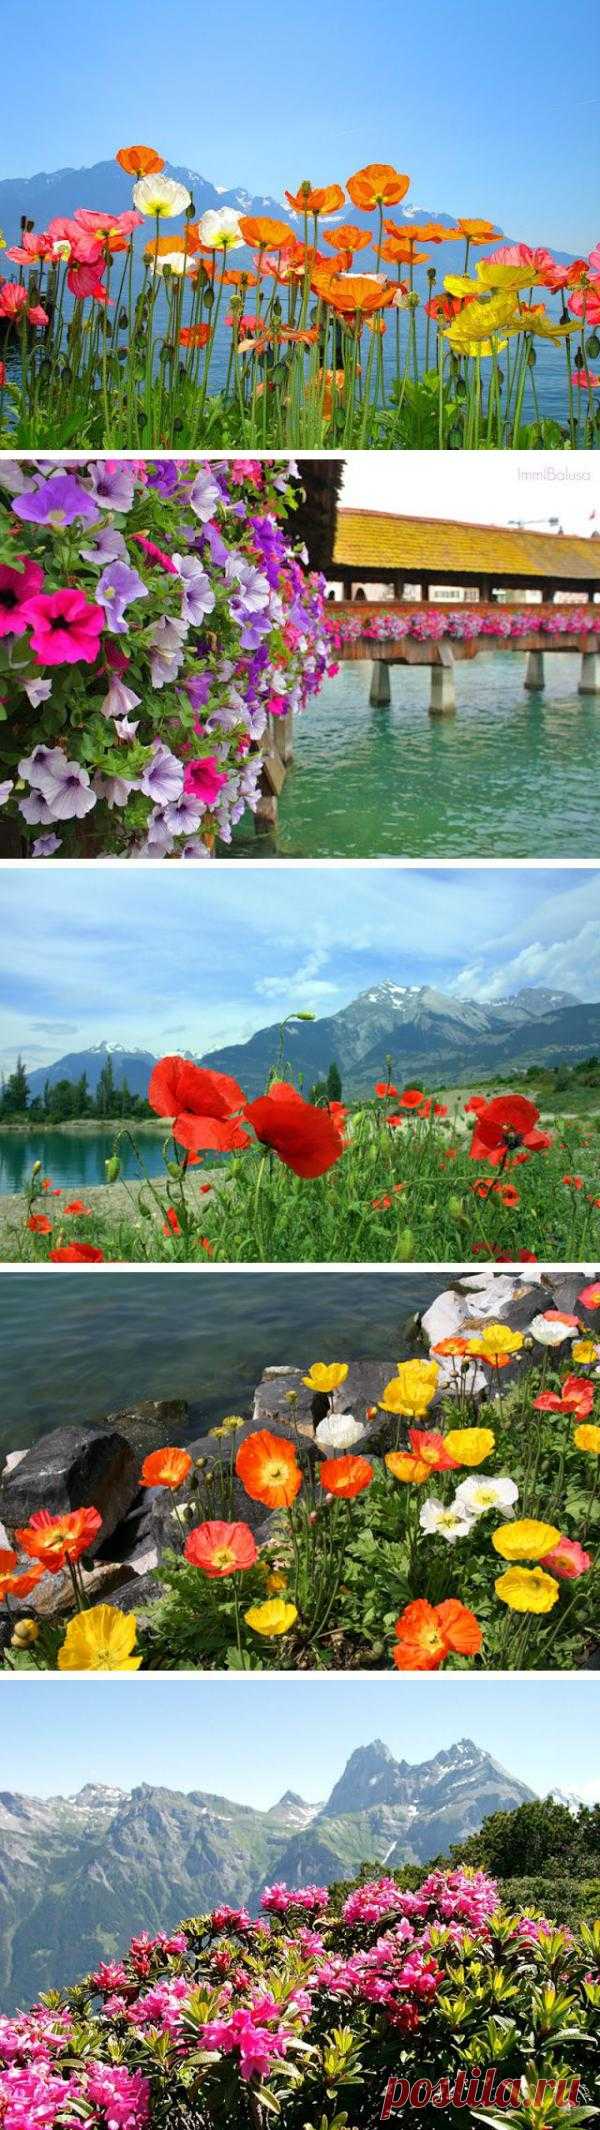 Цветы Швейцарии. Глядя на эти фото кажется, что в Швейцарии все просто утопает в цветах…